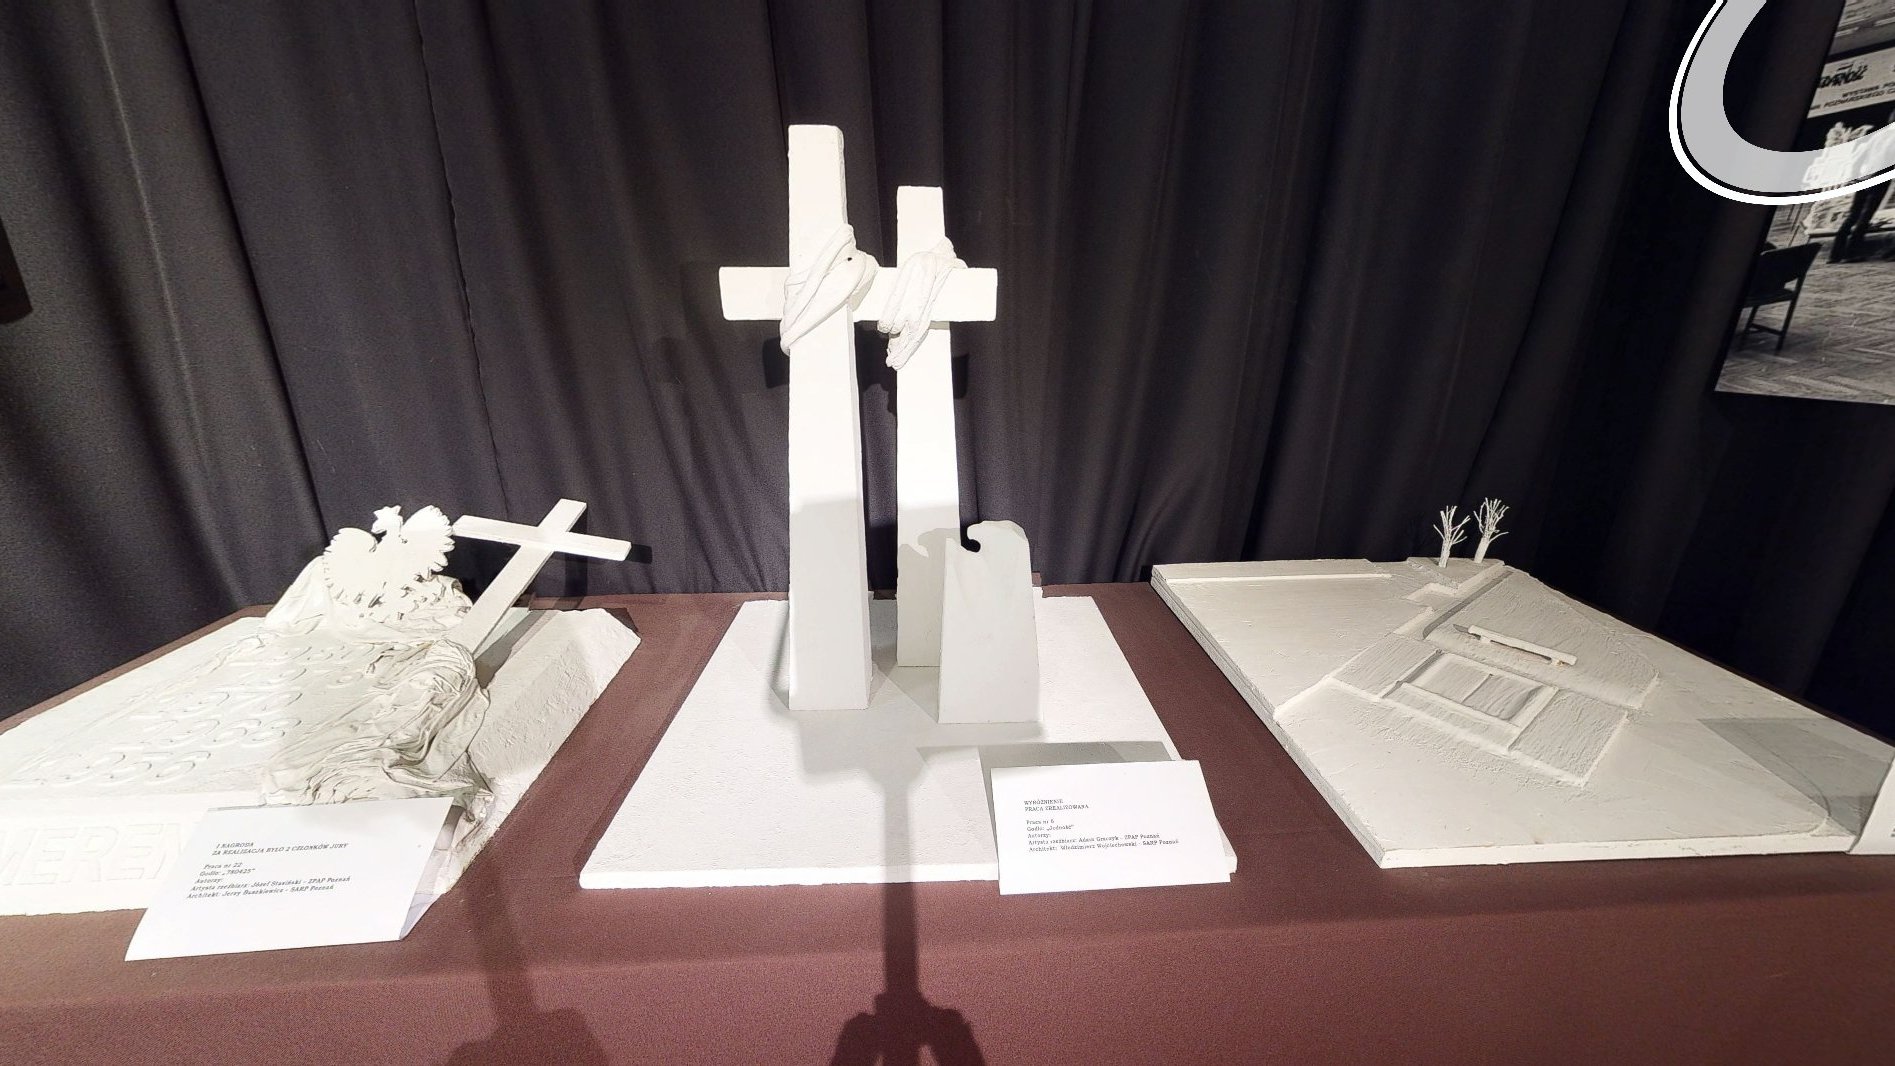 Biała makieta na stole. Przedstawia dwa krzyże obleczone sznurem i mniejszy pomnik, który przypomina orła. Przed makietą stoi tabliczka informacyjna.